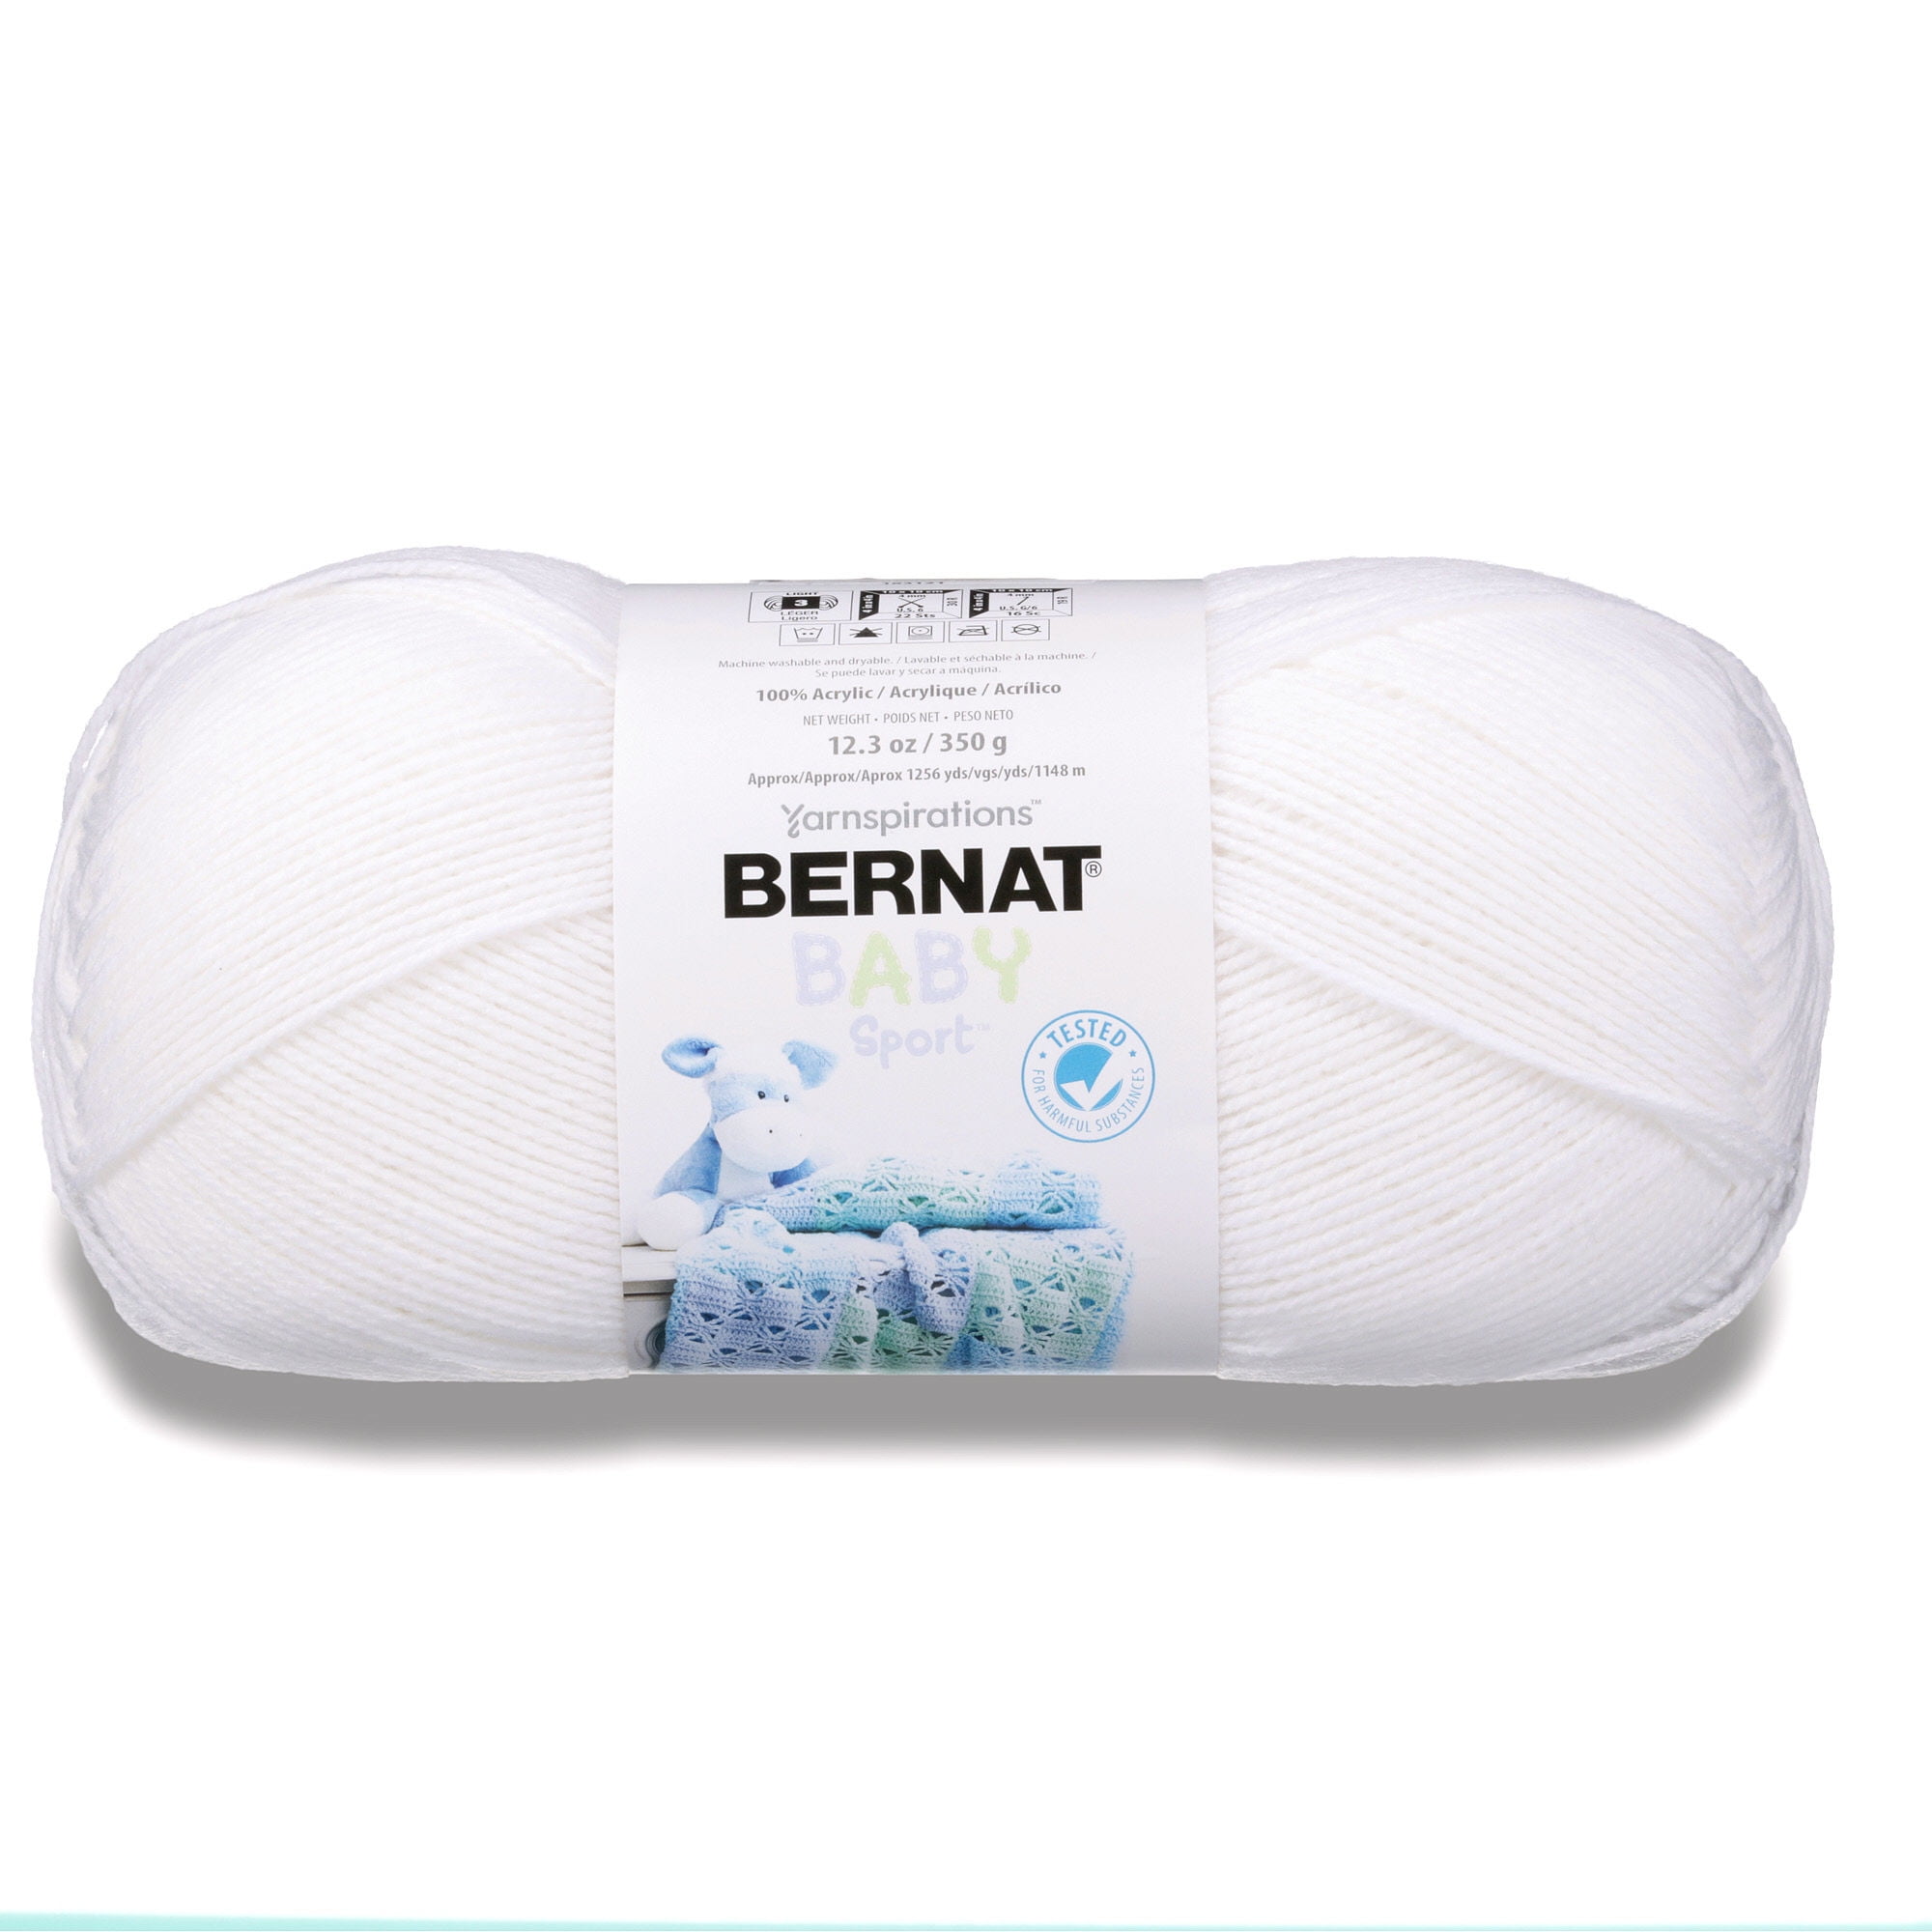 Bernat Baby Sport Big Ball Yarn - Baby White